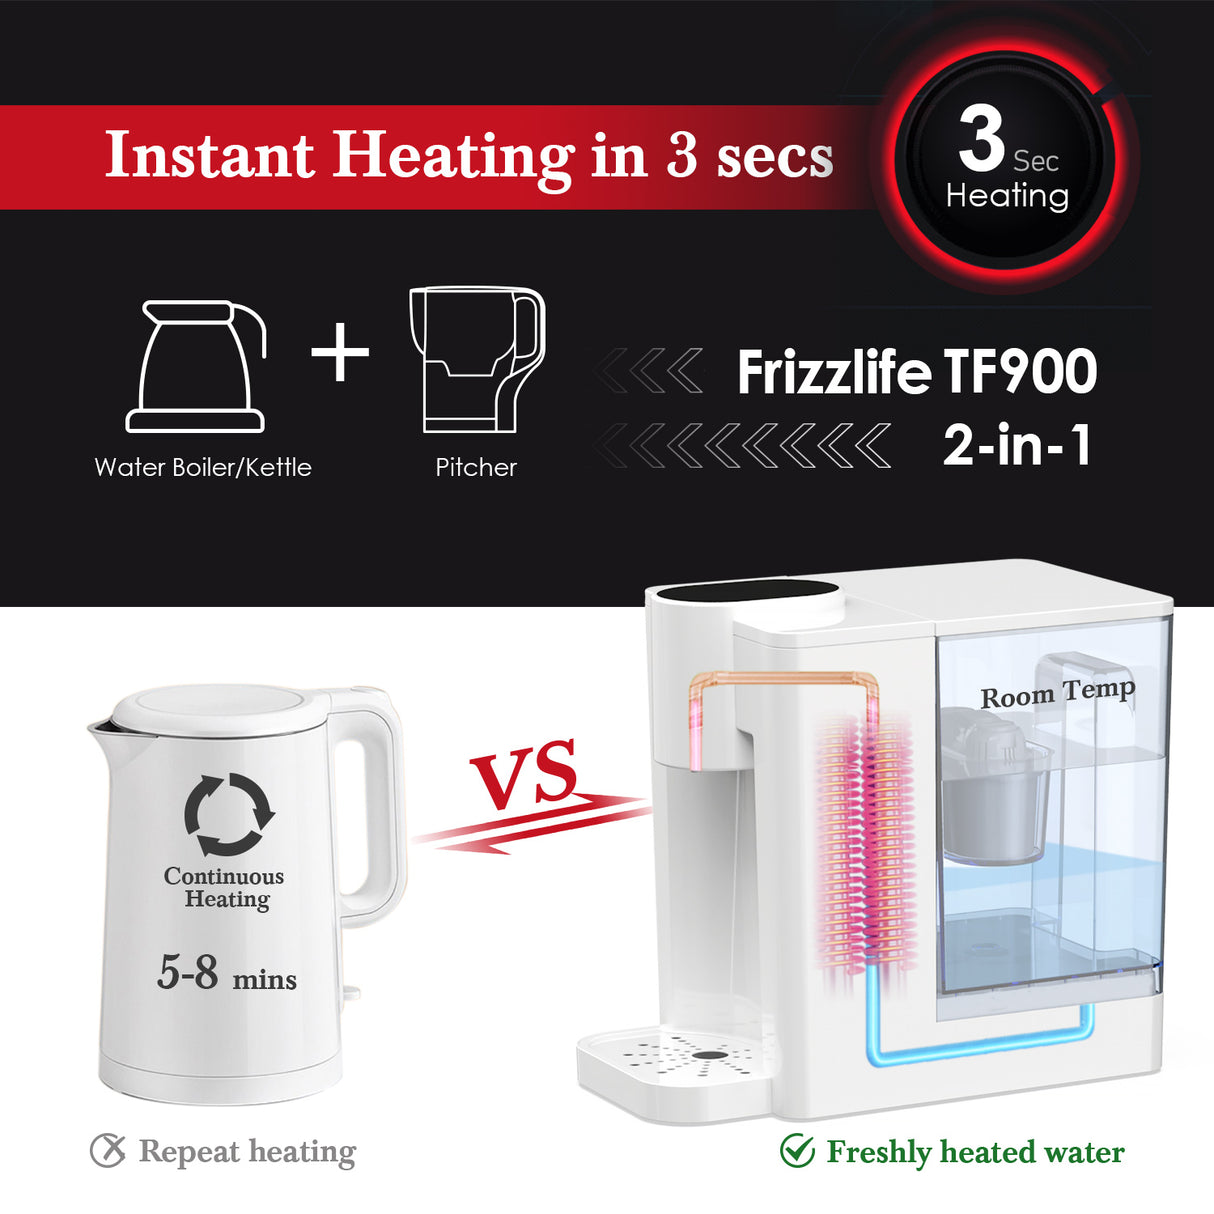 FRIZZLIFE TF900 Filtre distributeur d'eau chaude instantanée, 5 températures et 3 réglages de volume, verrouillage de sécurité haute température, zéro installation, test standard UL, 1 filtre inclus